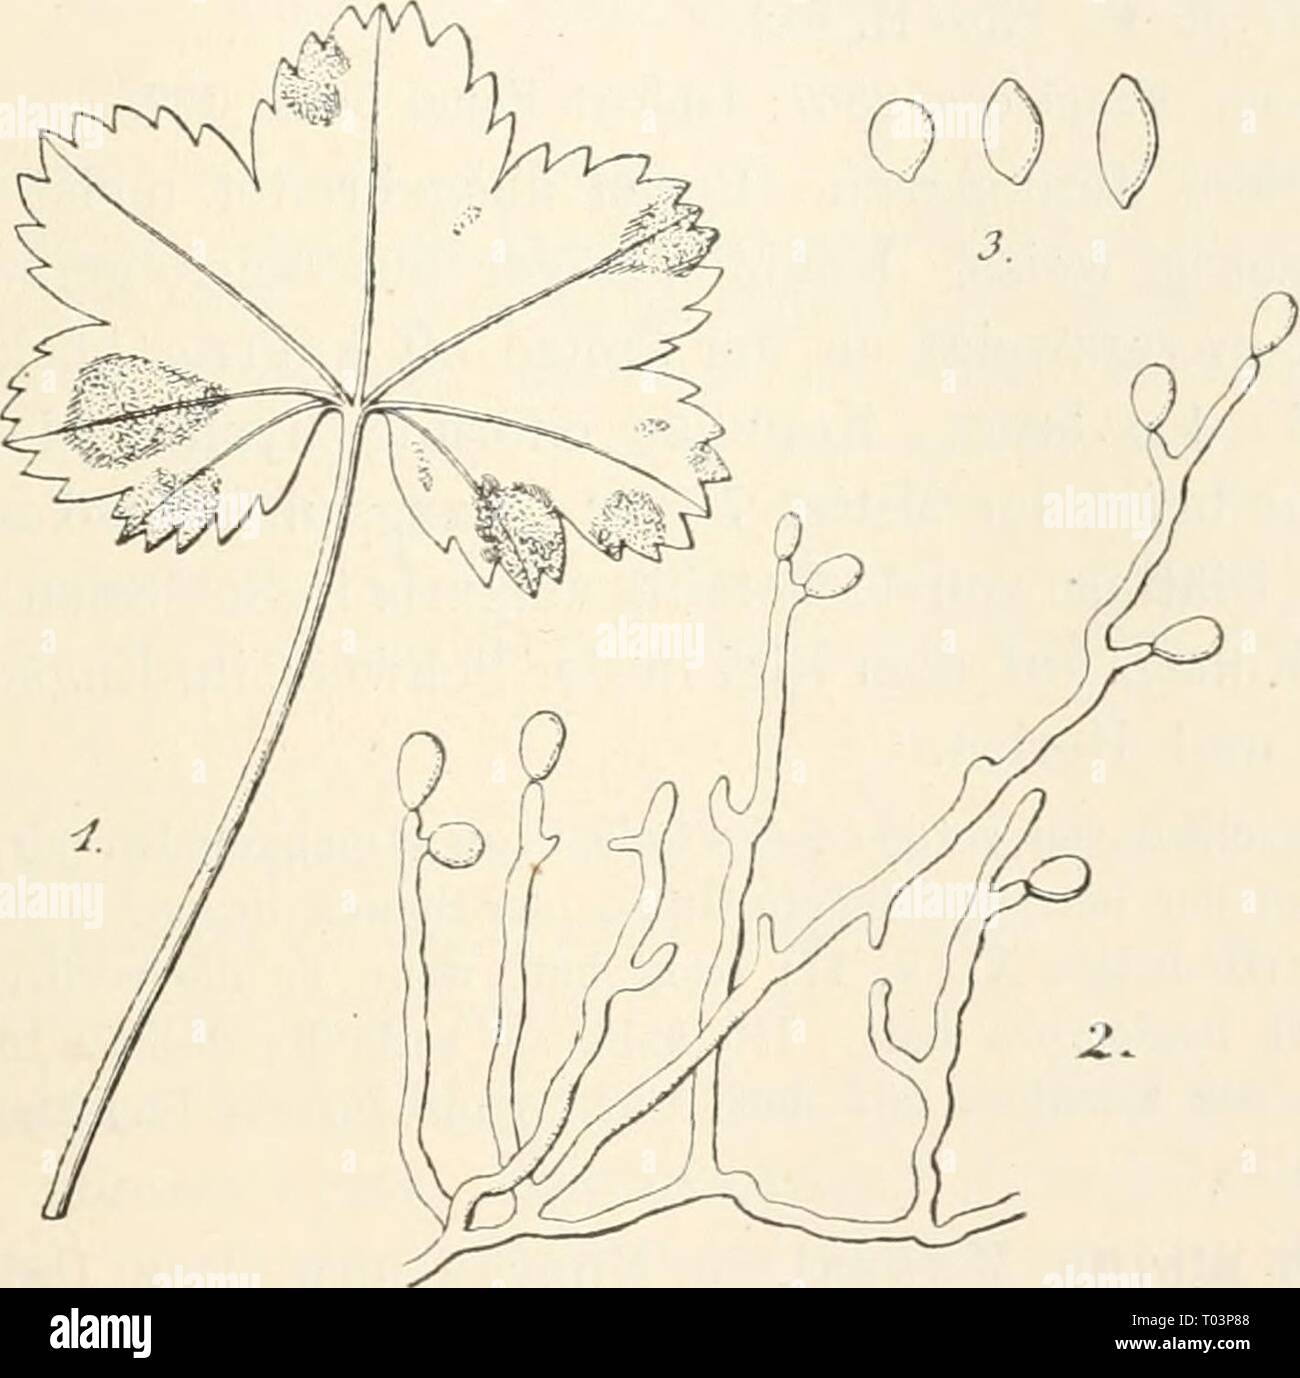 Dr. L. Rabenhorst's Kryptogamen-Flora von Deutschland, Oesterreich und der Schweiz . drlrabenhorstskr0108rabe Year: 1907  243 Exs. Sydow Myc. march. 390, 3591, 4273; Sydow Myc. germ. 46; Krieger Fungi sax. 1400; All. et Sehn. Fungi bav. 193, 588; Spegazz. Decad. 105; D. Sacc. Myc. ital. 187, 987; Kunze Fungi sei. 699; Rabenh. Fungi eur. 874. Blattflecken zuerst klein, rundlich, dann zusammenfliessend und fast das ganze Blatt einnehmend, trocknend, oben gelbbraun, mit purpurrotbraunem Saume, unten dunkelgrau. Käsen unterseitig. Konidienträger dicht büschelig, weiss, unseptiert, an der Basis bis Stock Photo